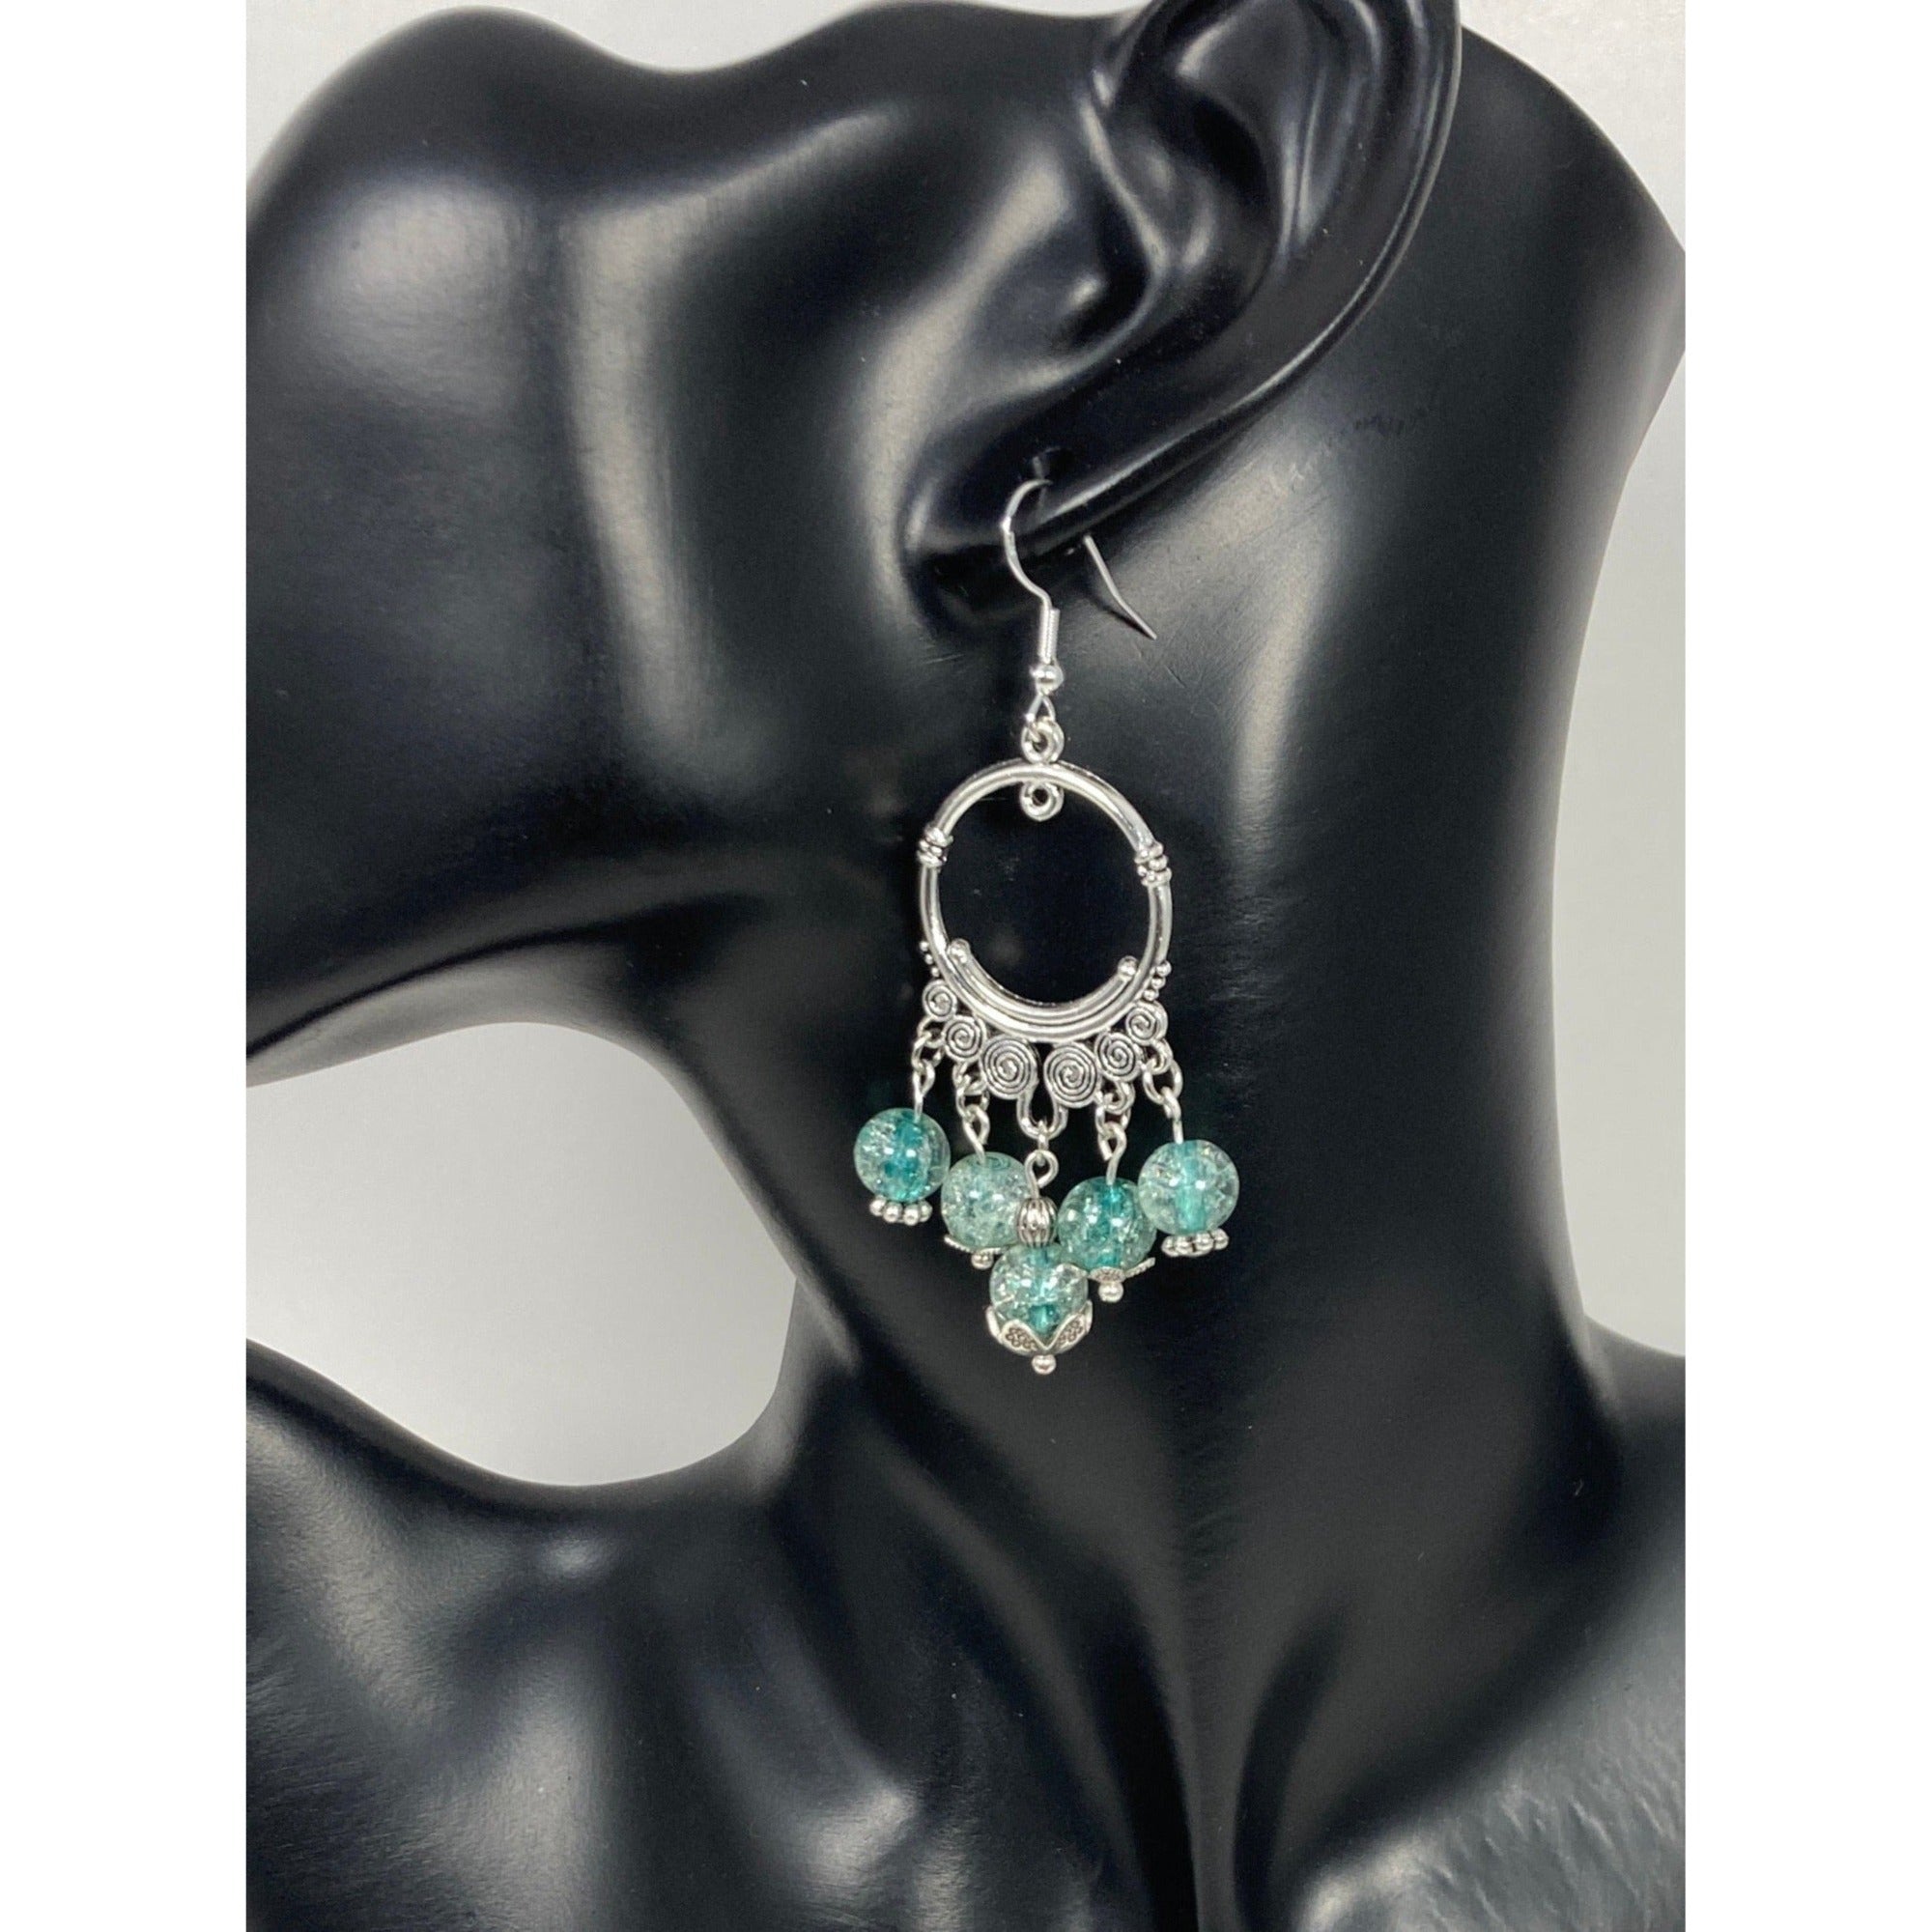 Chandelier Earrings with Teardrop Imitation Pearls - Ruby Lane